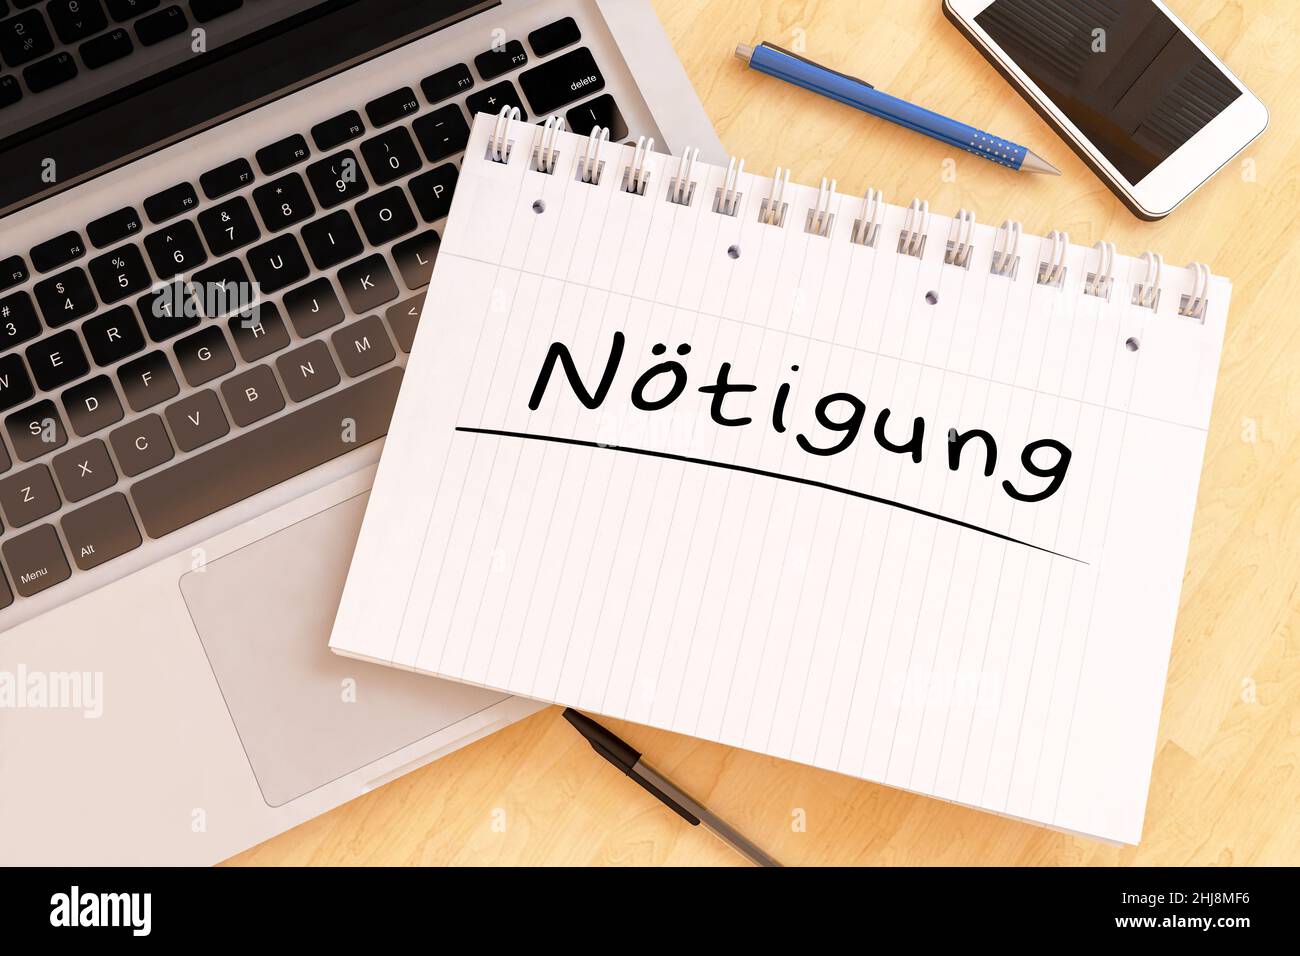 Noetigen - deutsch Wort für Zwang oder Zwang - handgeschriebener Text in einem Notizbuch auf einem Schreibtisch - 3D Darstellung. Stockfoto